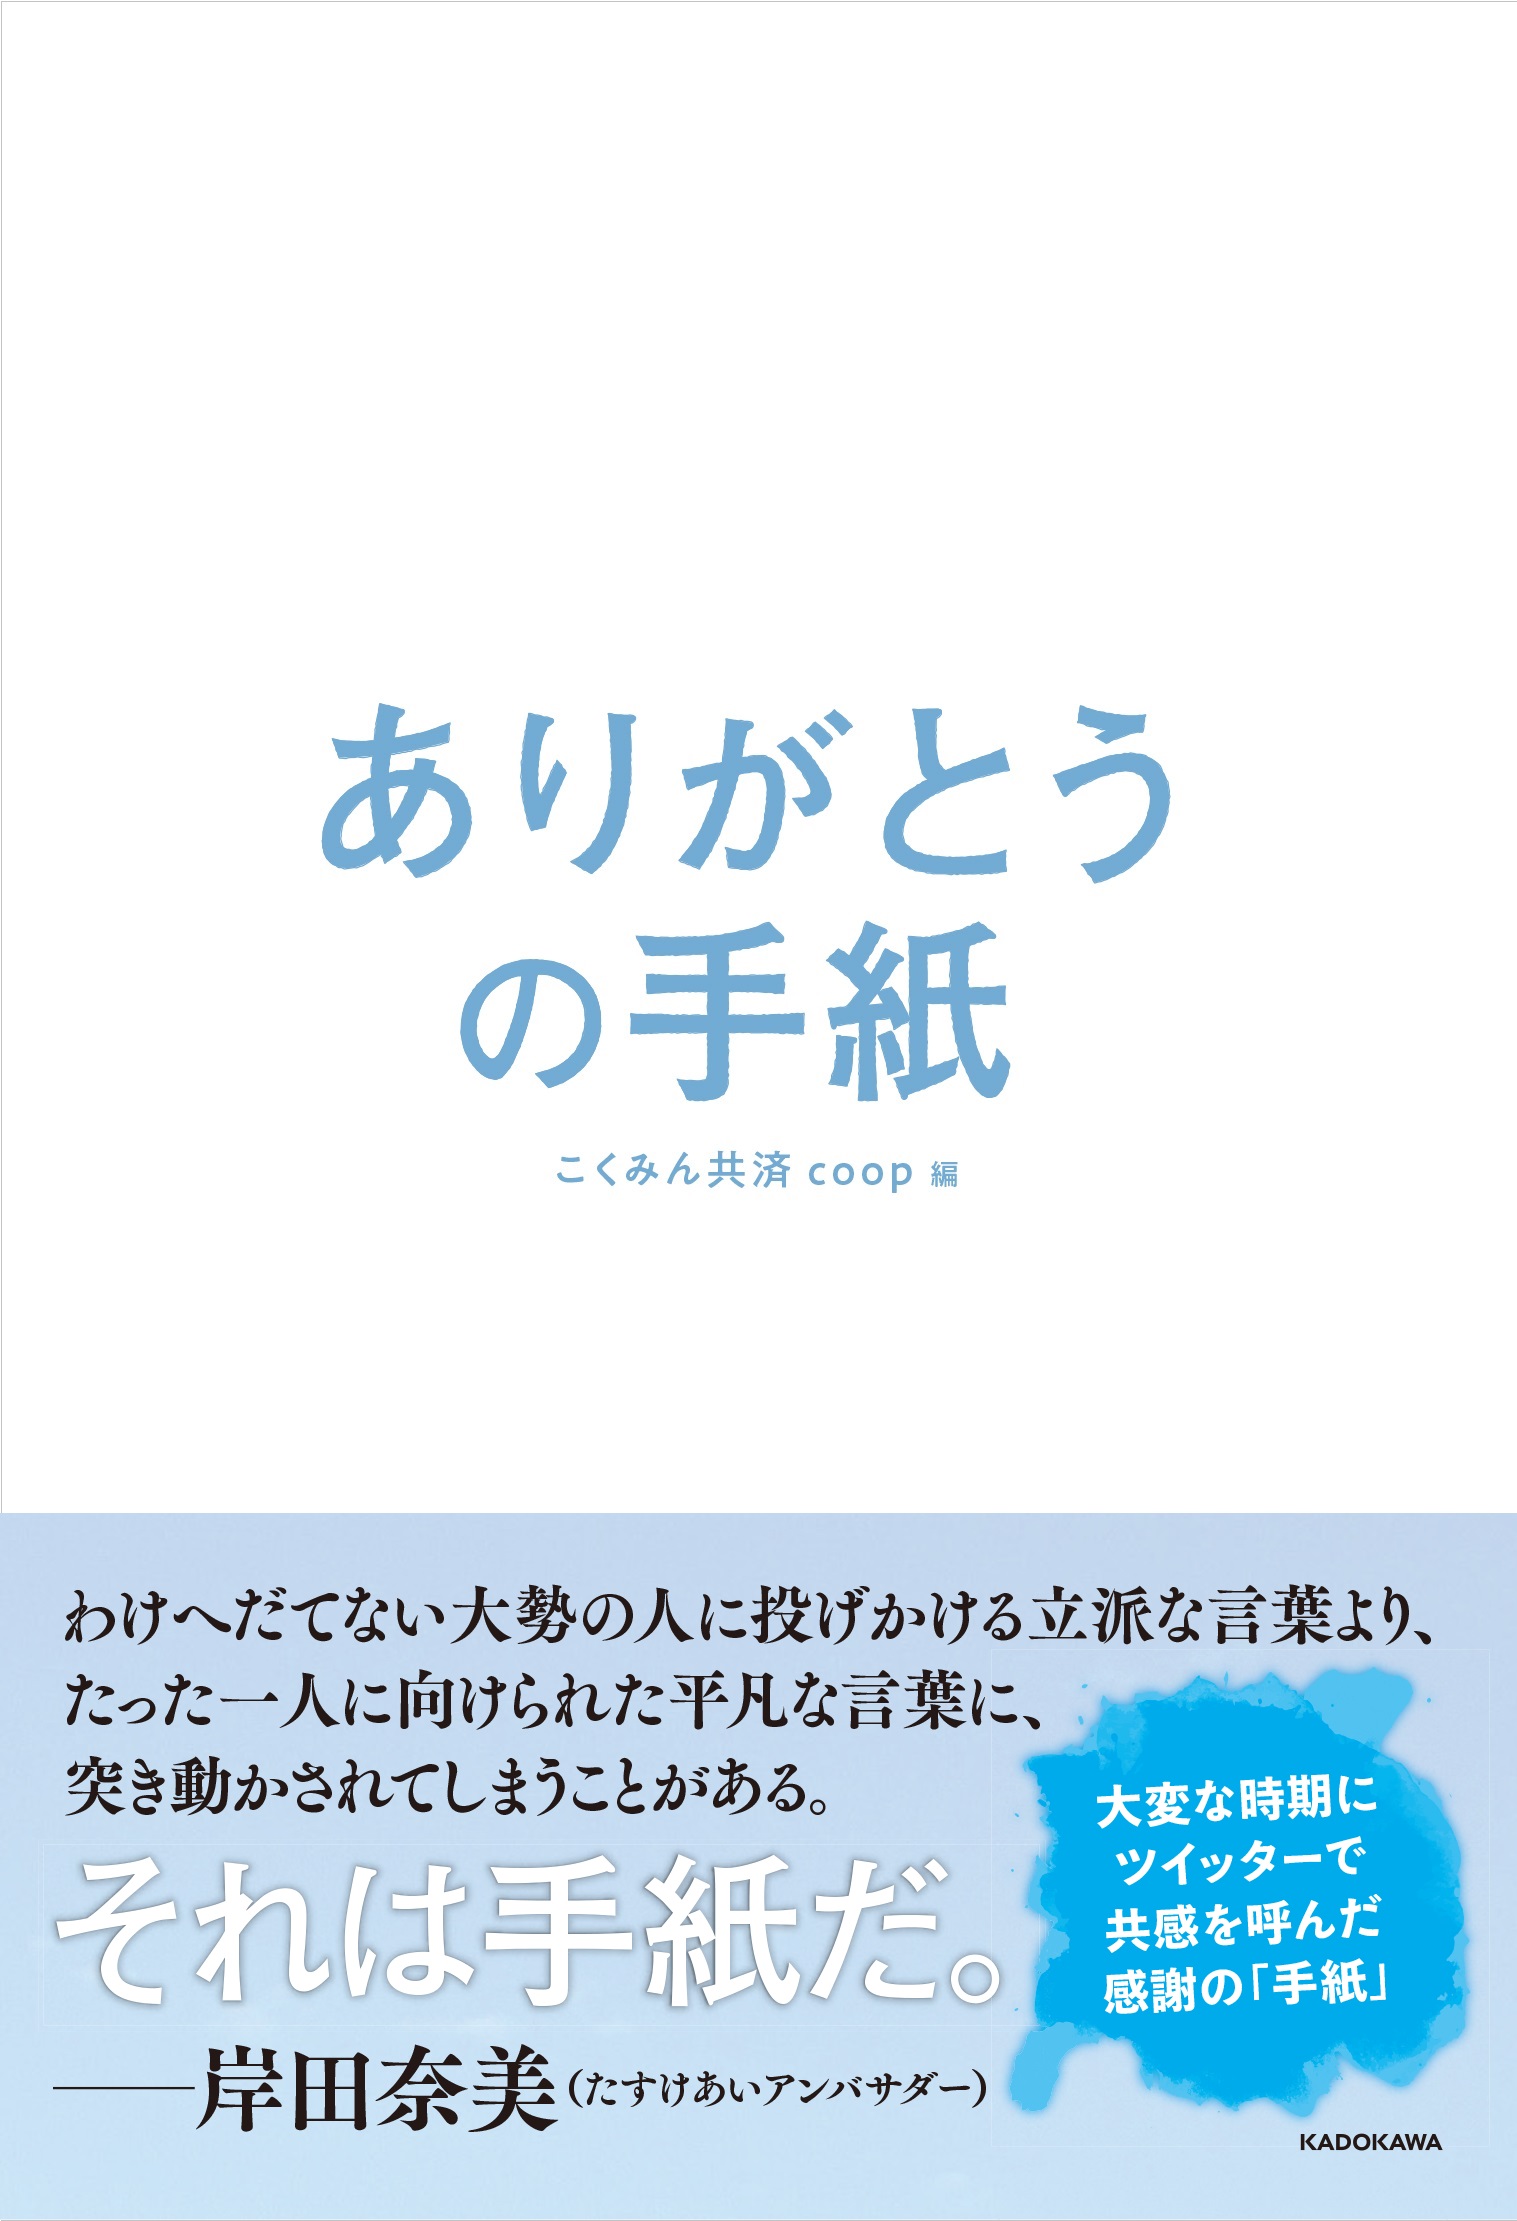 Kadokawa公式ショップ ありがとうの手紙 本 カドカワストア オリジナル特典 本 関連グッズ Blu Ray Dvd Cd